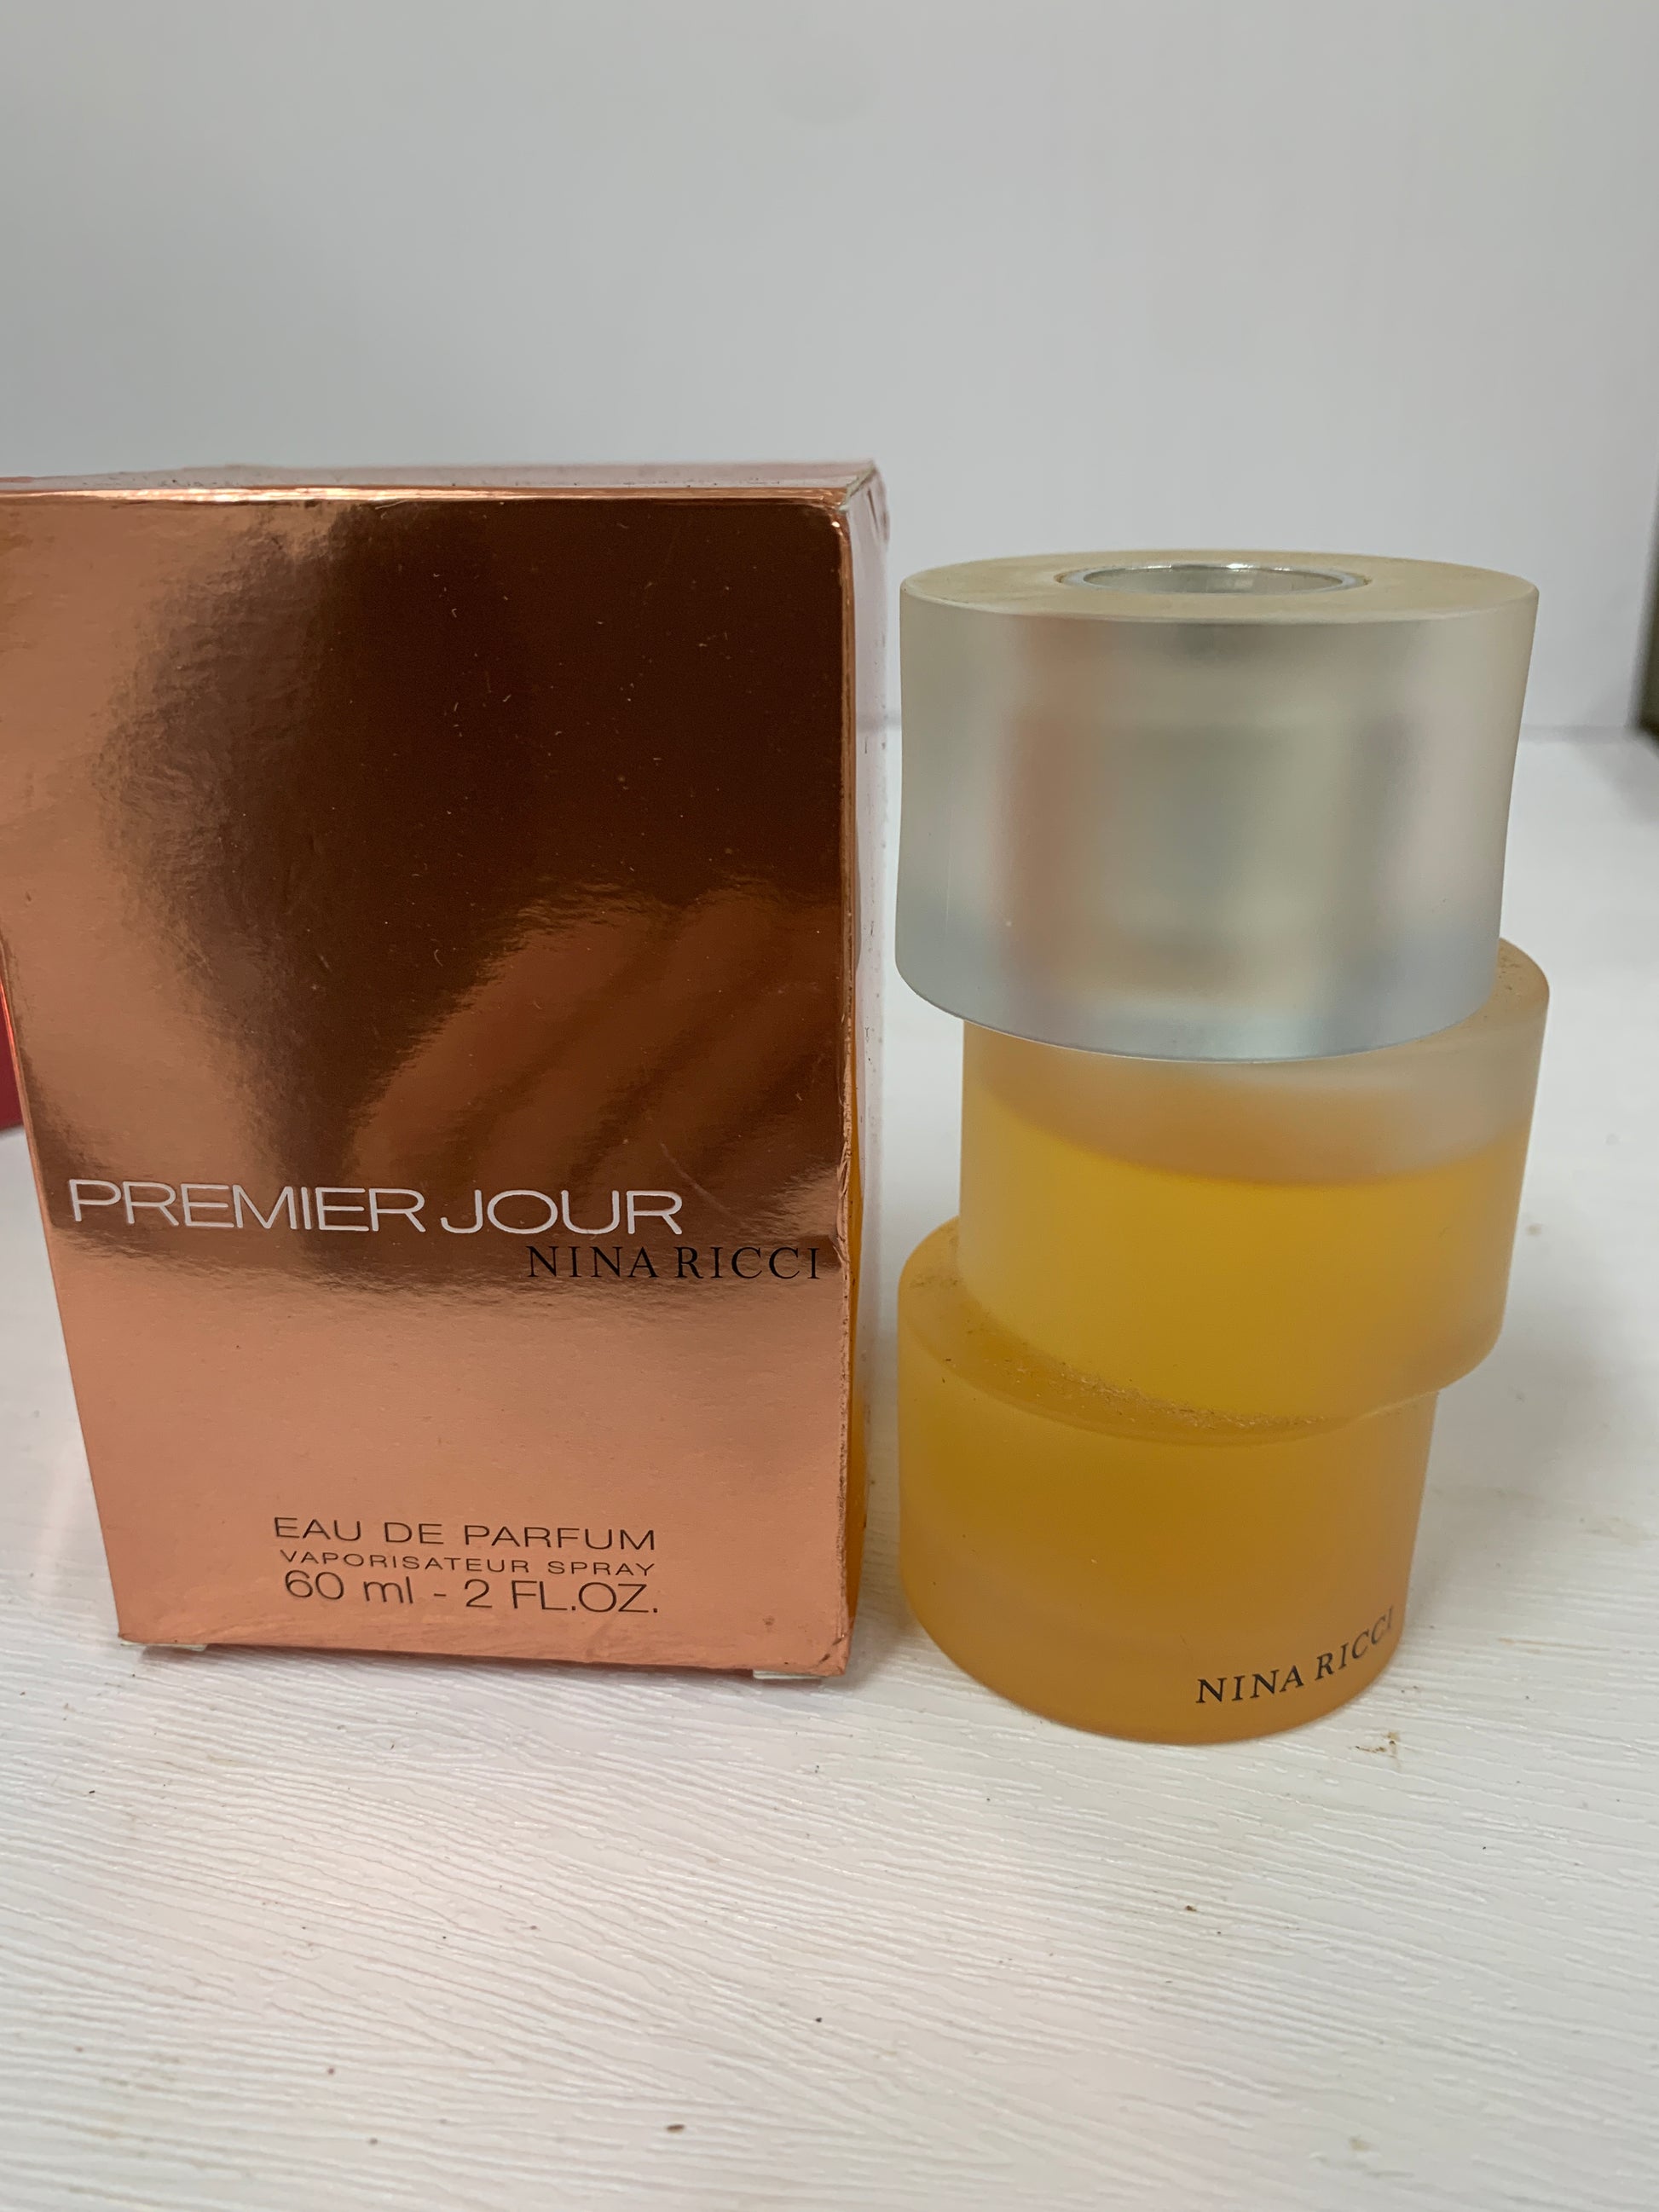 Nina ricci edp de premier oz Ground 60ml eau 2 – - parfum jour OCT21 Trendy